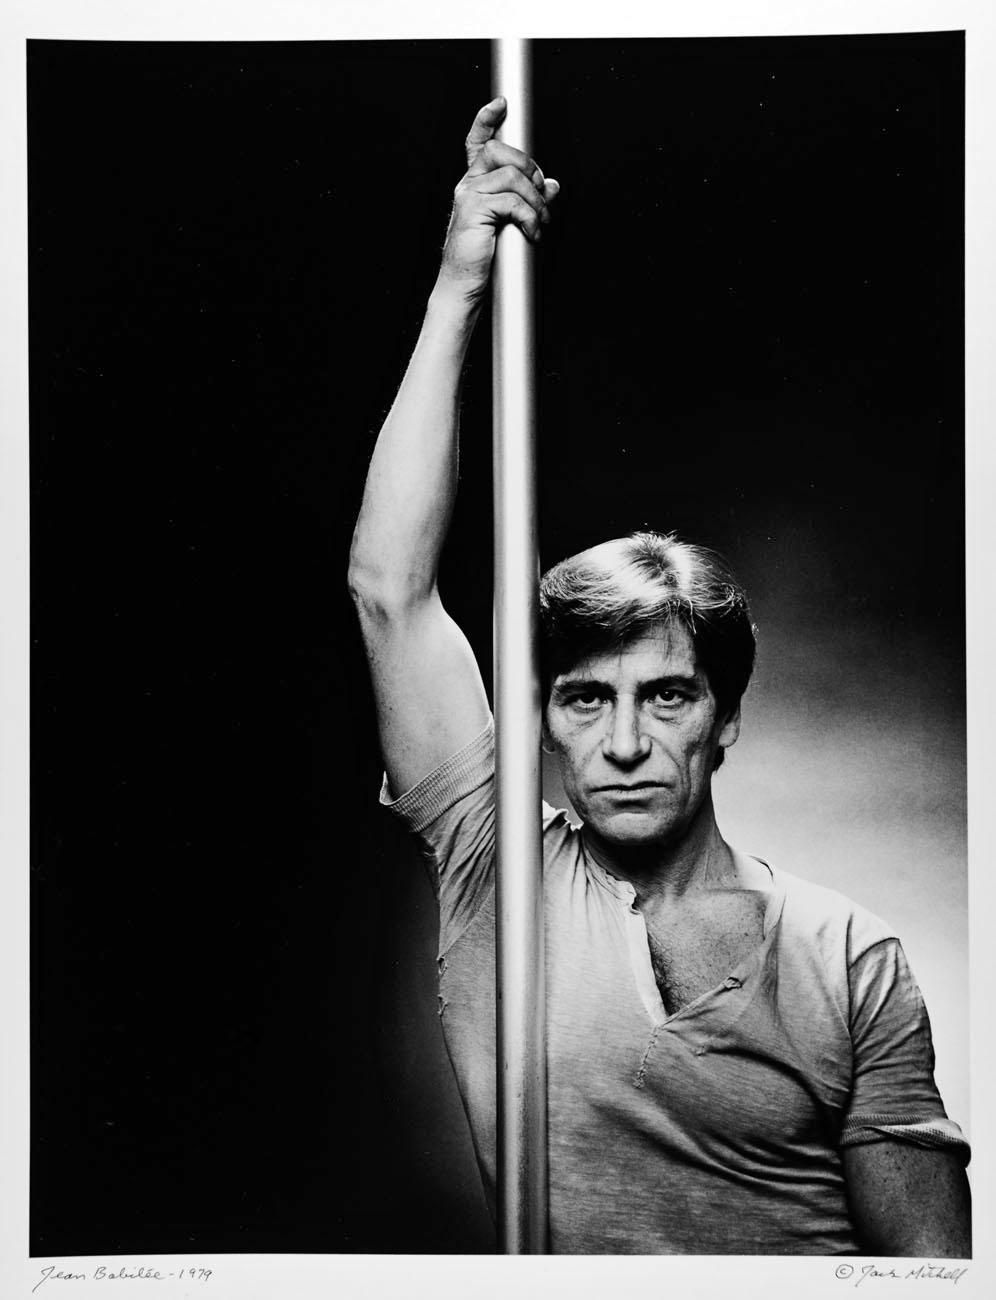 11 x 14" alte Silbergelatinefotografie des französischen Tänzers/Choreographen Jean Babilee, einem der größten Künstler des modernen Balletts, aufgenommen im Jahr 1979. Signiert von Jack Mitchell auf der Vorderseite des Drucks.  Kommt direkt aus dem